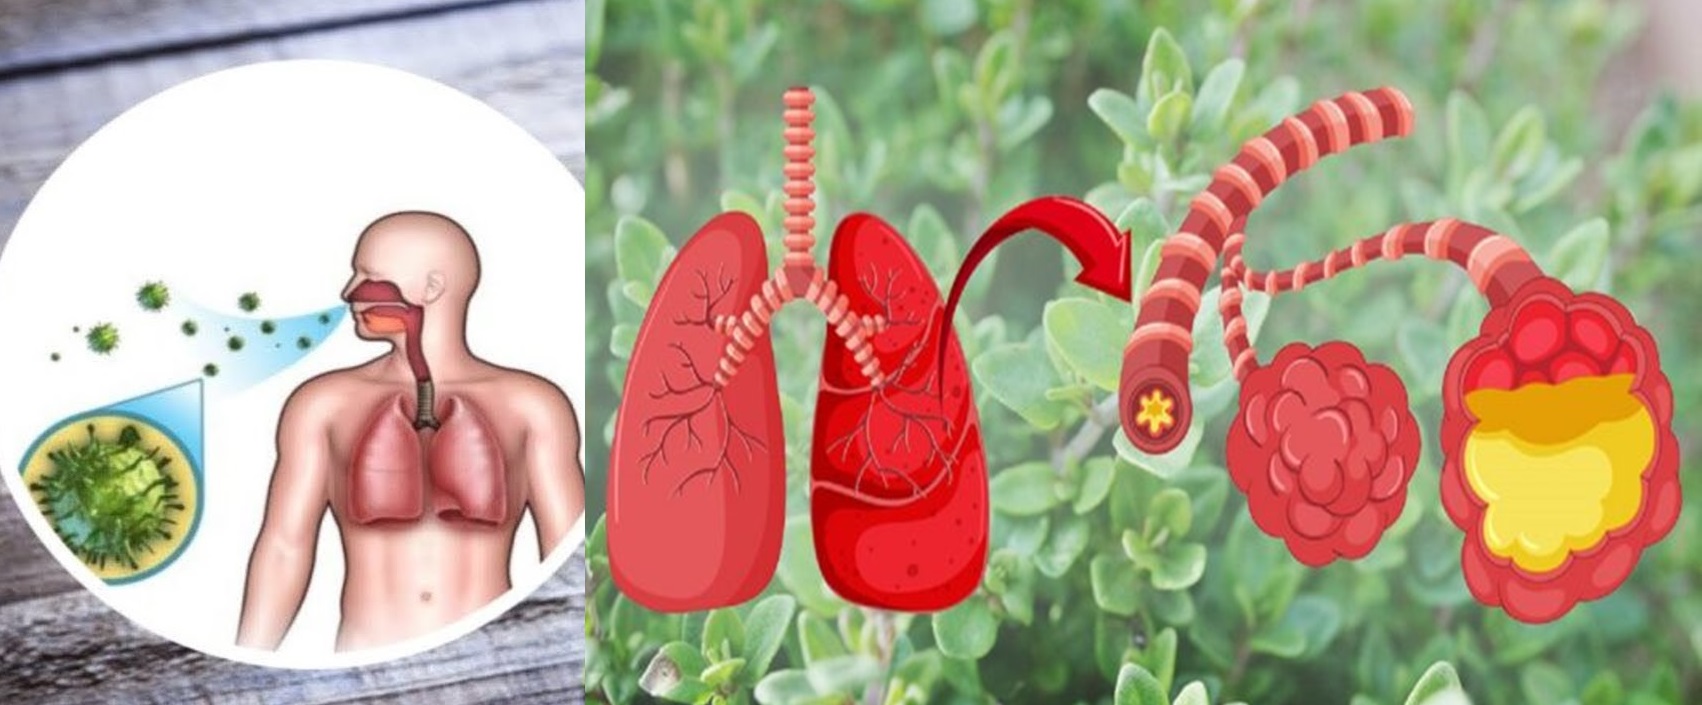 10 Plante puternice care elimină mucusul din plămâni și te ajută să respiri mai ușor